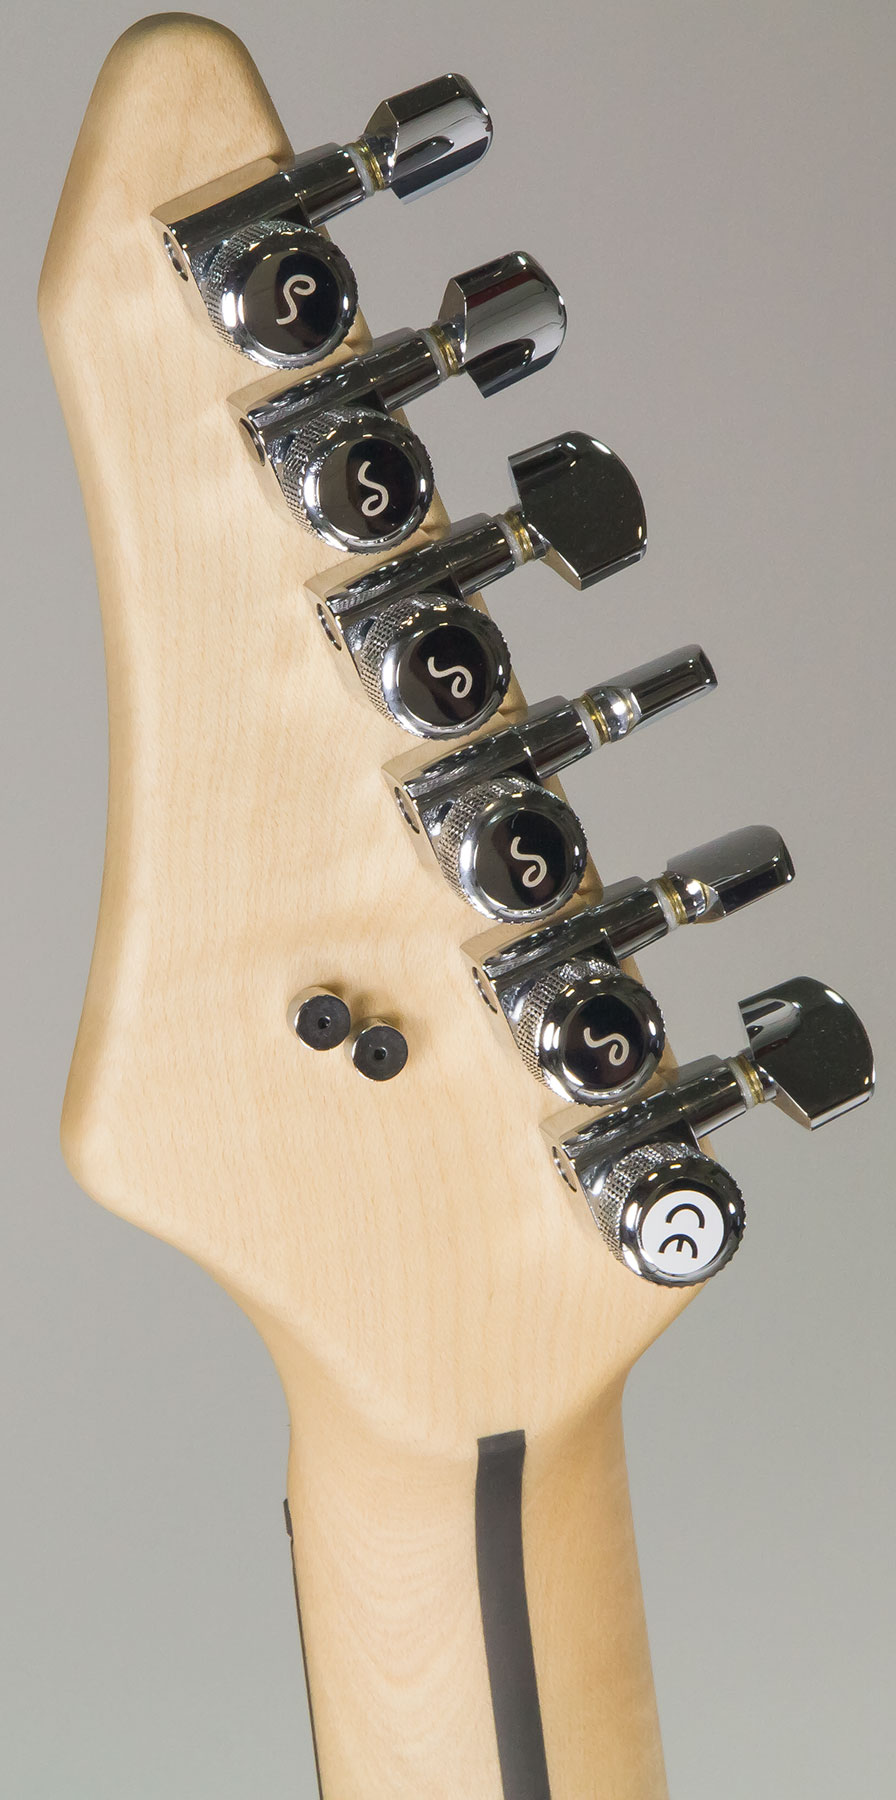 Vigier Excalibur Indus Hh Trem Rw - Textured Black - Double Cut E-Gitarre - Variation 5